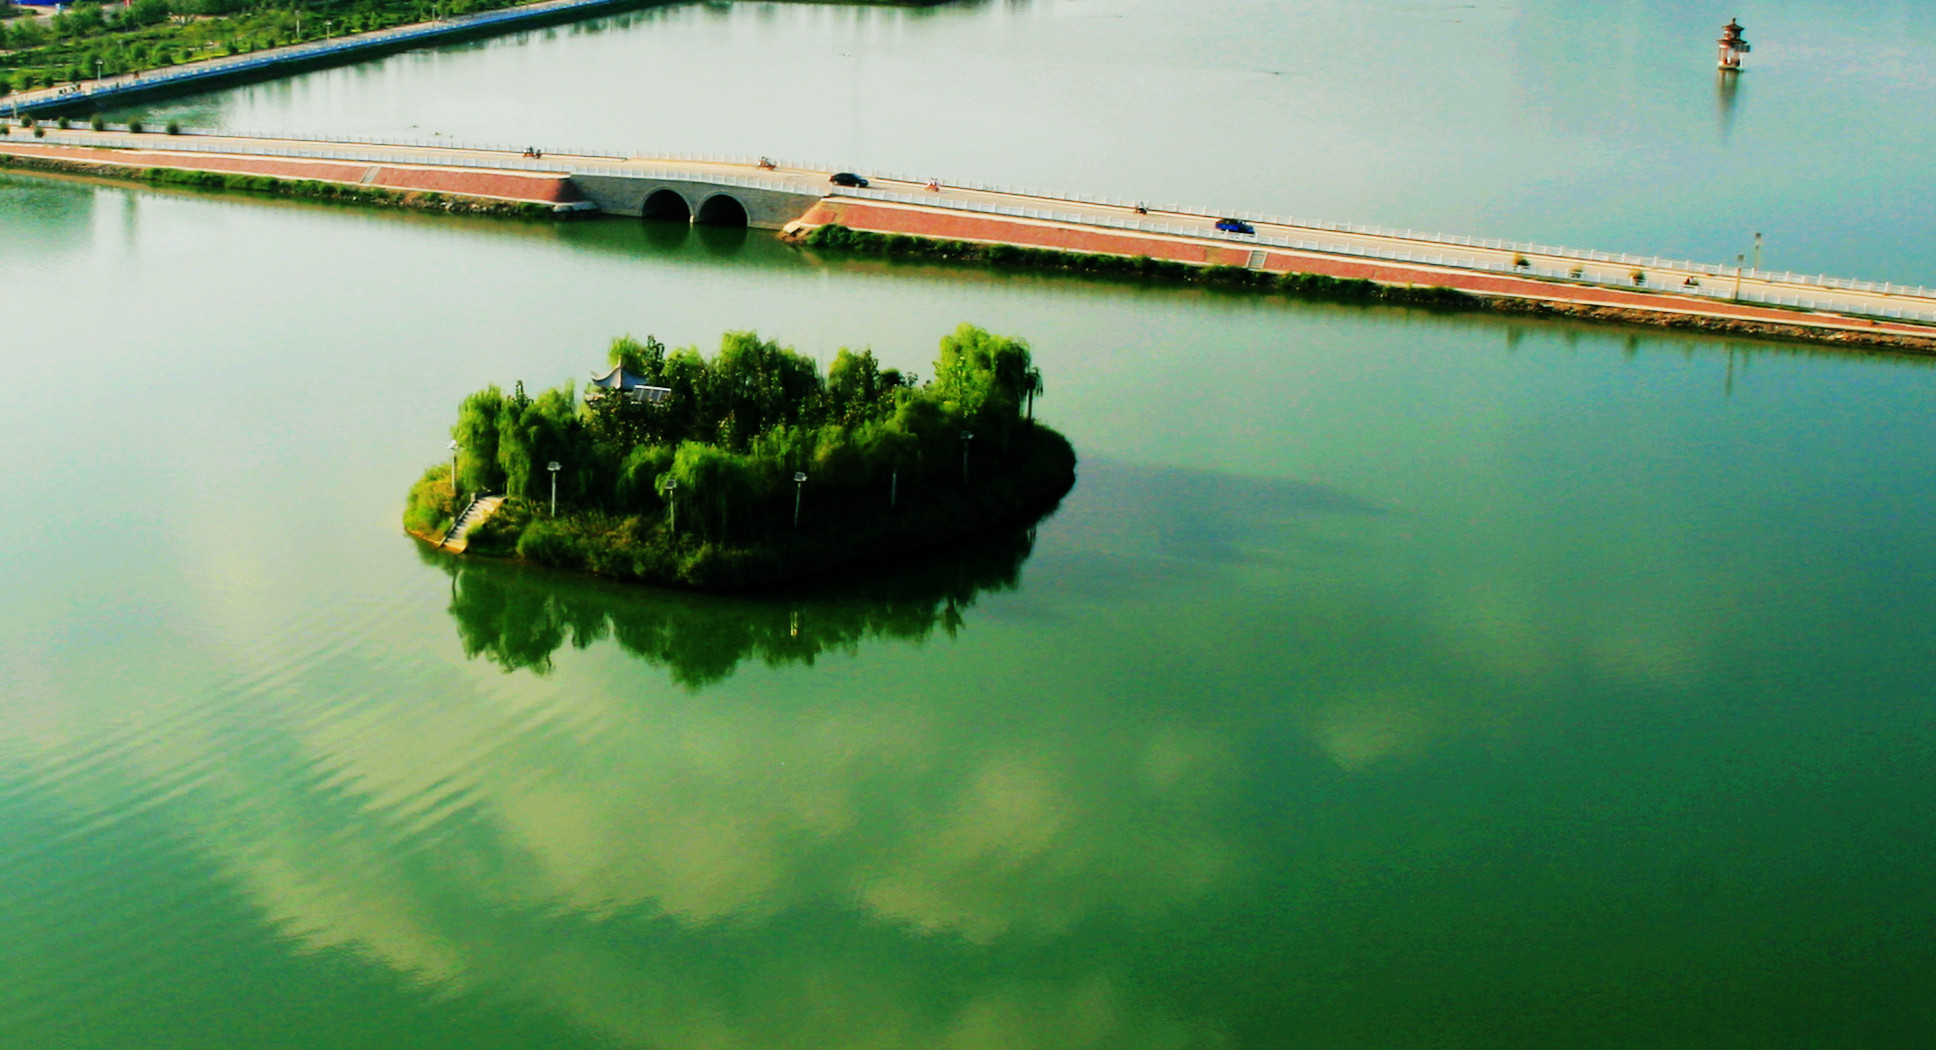 武汉东湖有哪些景点,武汉东湖风景区攻略 - 伤感说说吧